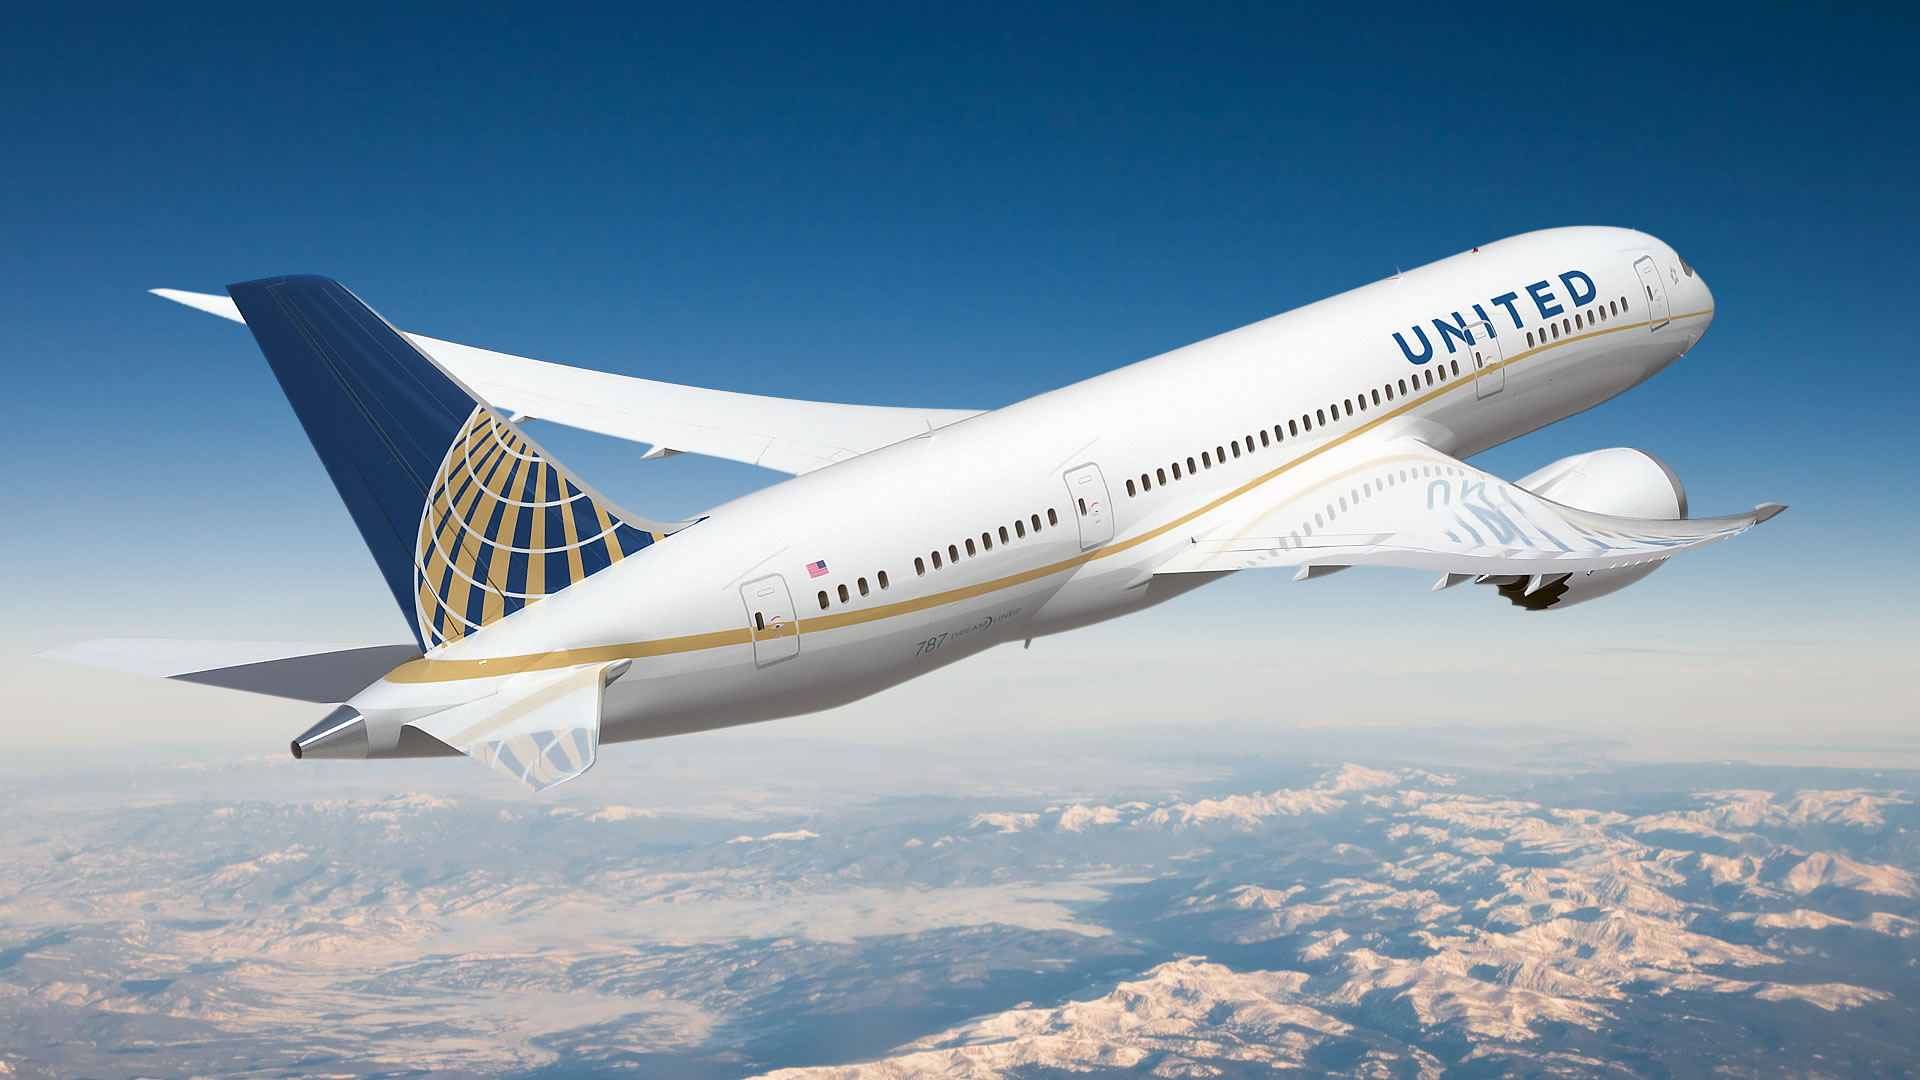 Política mejorada de asientos familiares anunciada por United Airlines